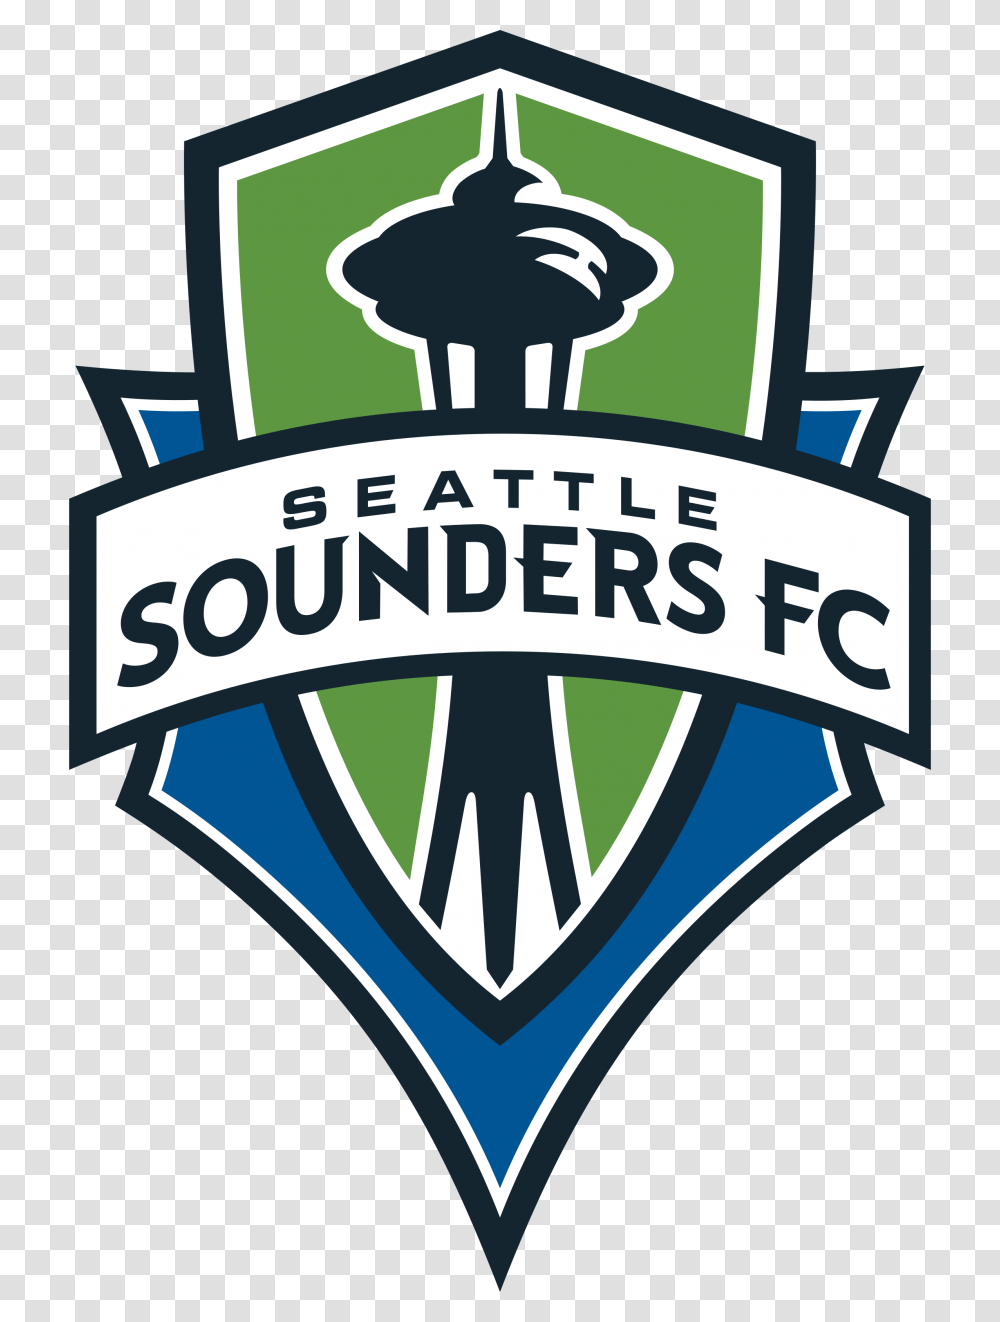 Single Game Tickets Seattle Sounders Fc Logo, Symbol, Badge, Emblem, Label Transparent Png